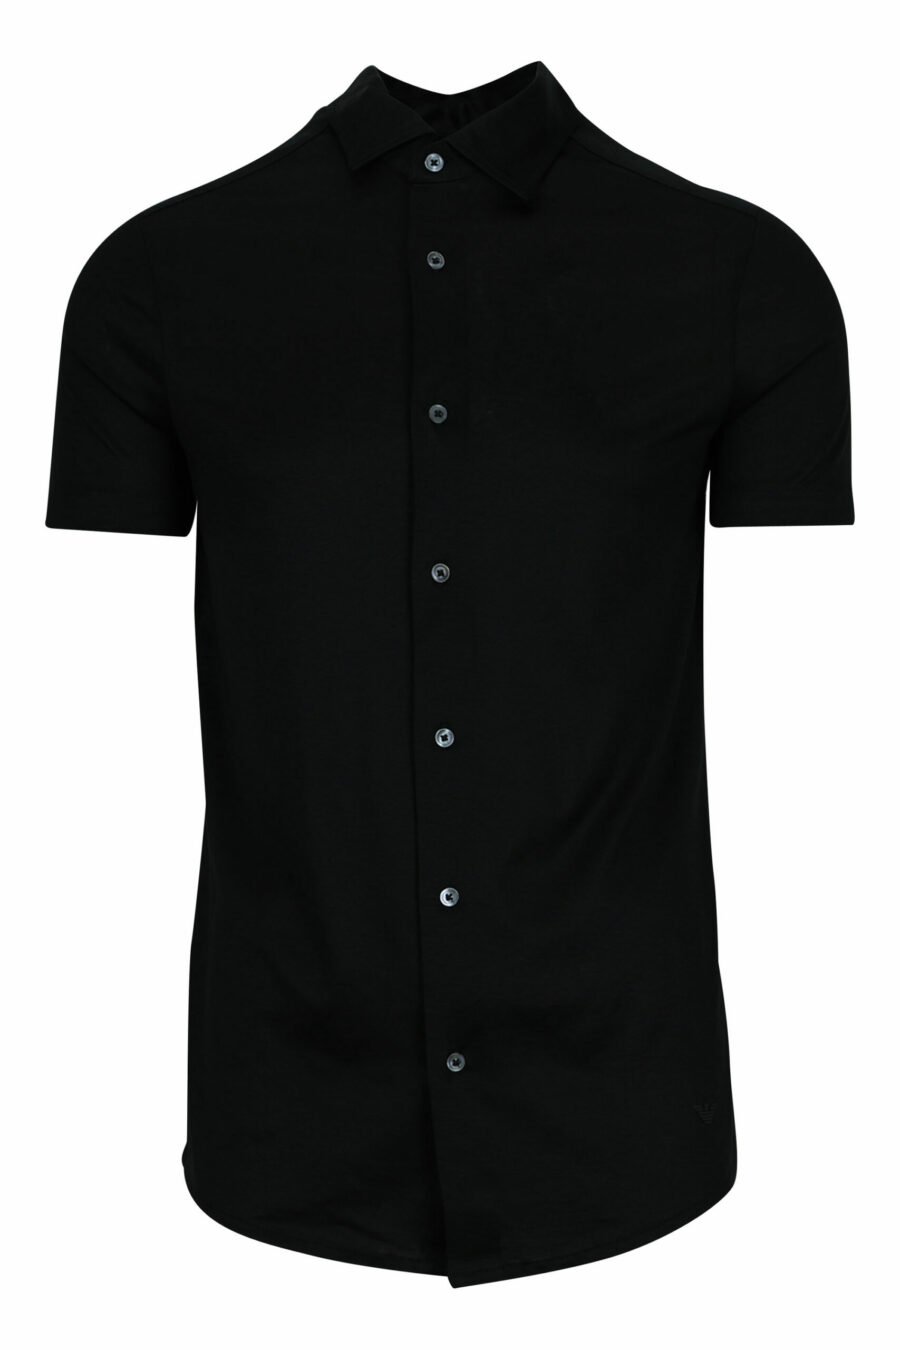 Camisa negra manga corta con minilogo águila - 8056861420206 scaled